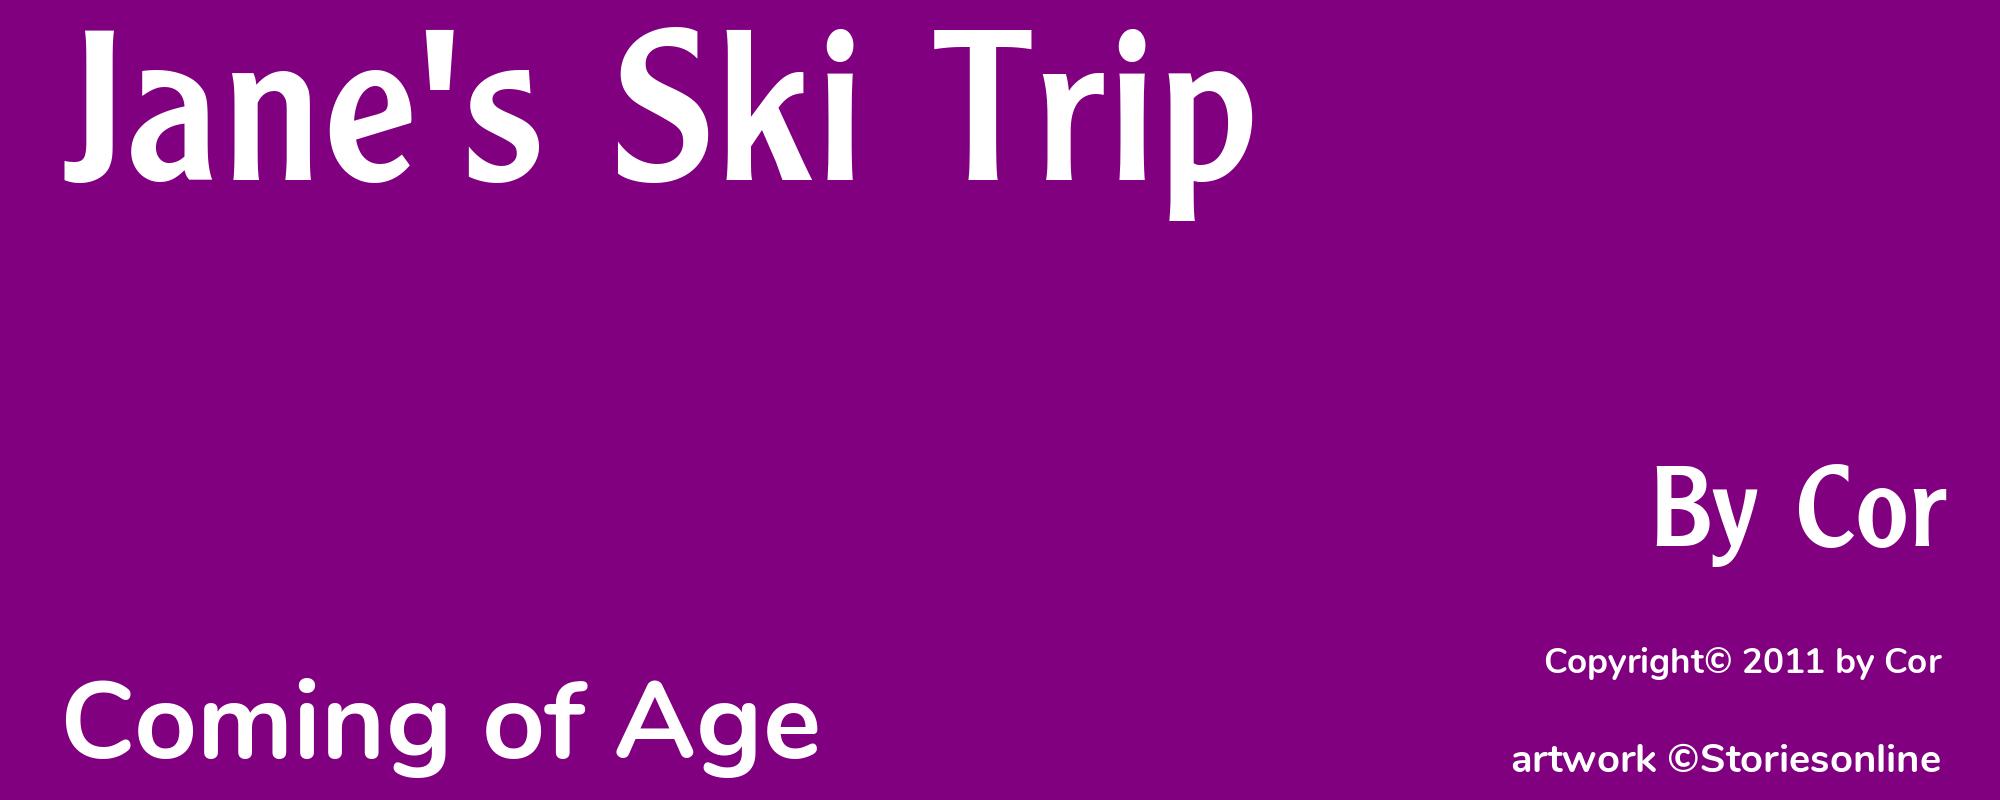 Jane's Ski Trip - Cover